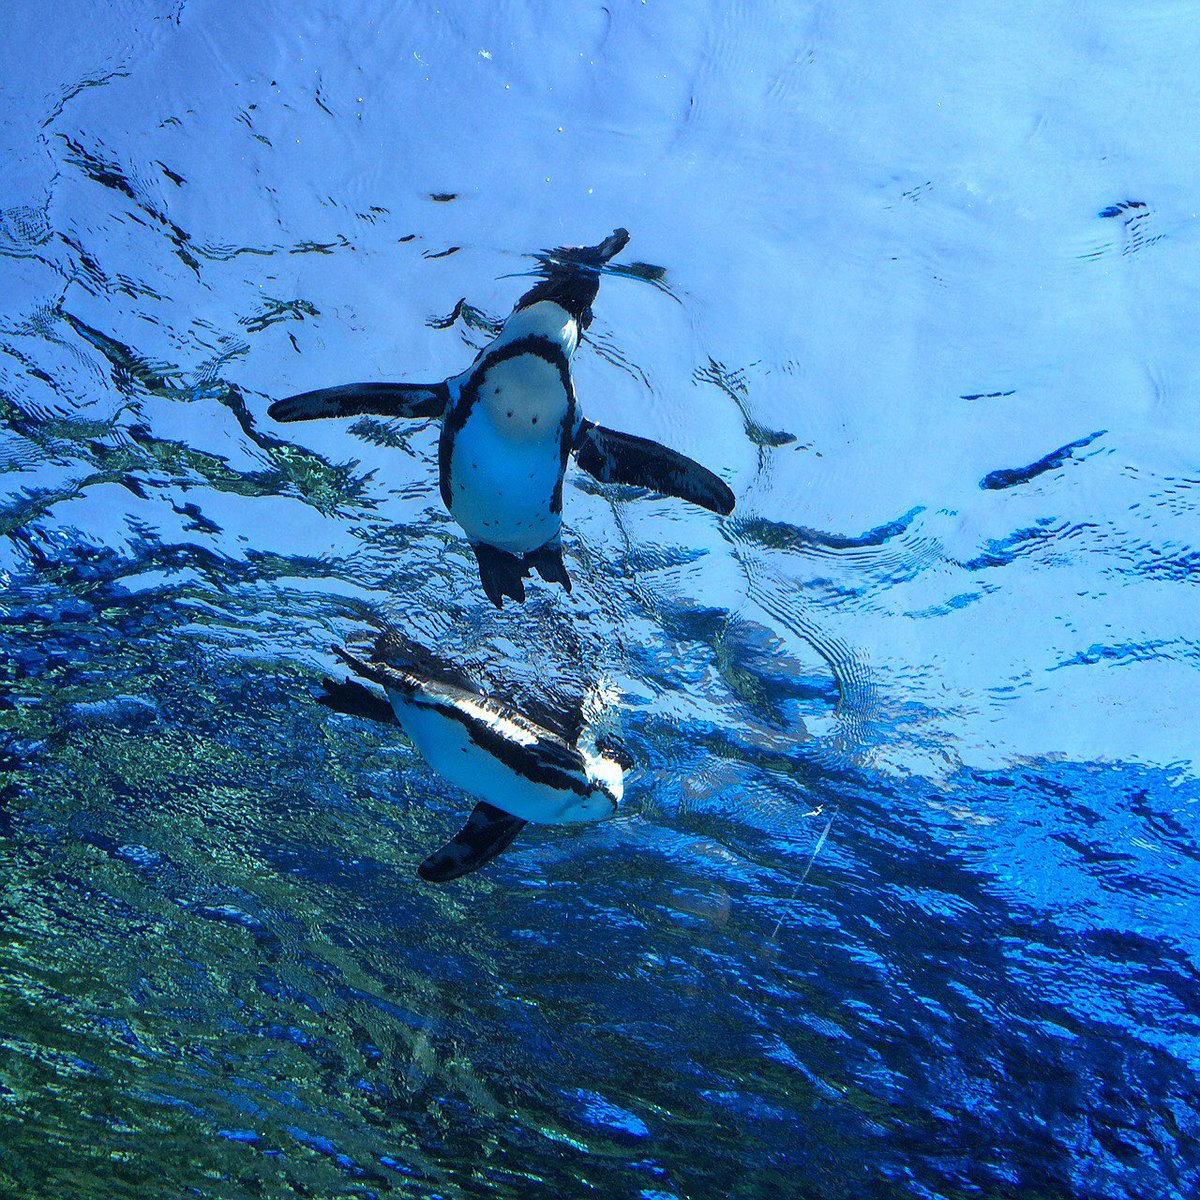 「ゴールデンウィークに空飛ぶペンギン見に行ったんだけど部屋の天井にほしいぐらいずっ」|Rimi.のイラスト